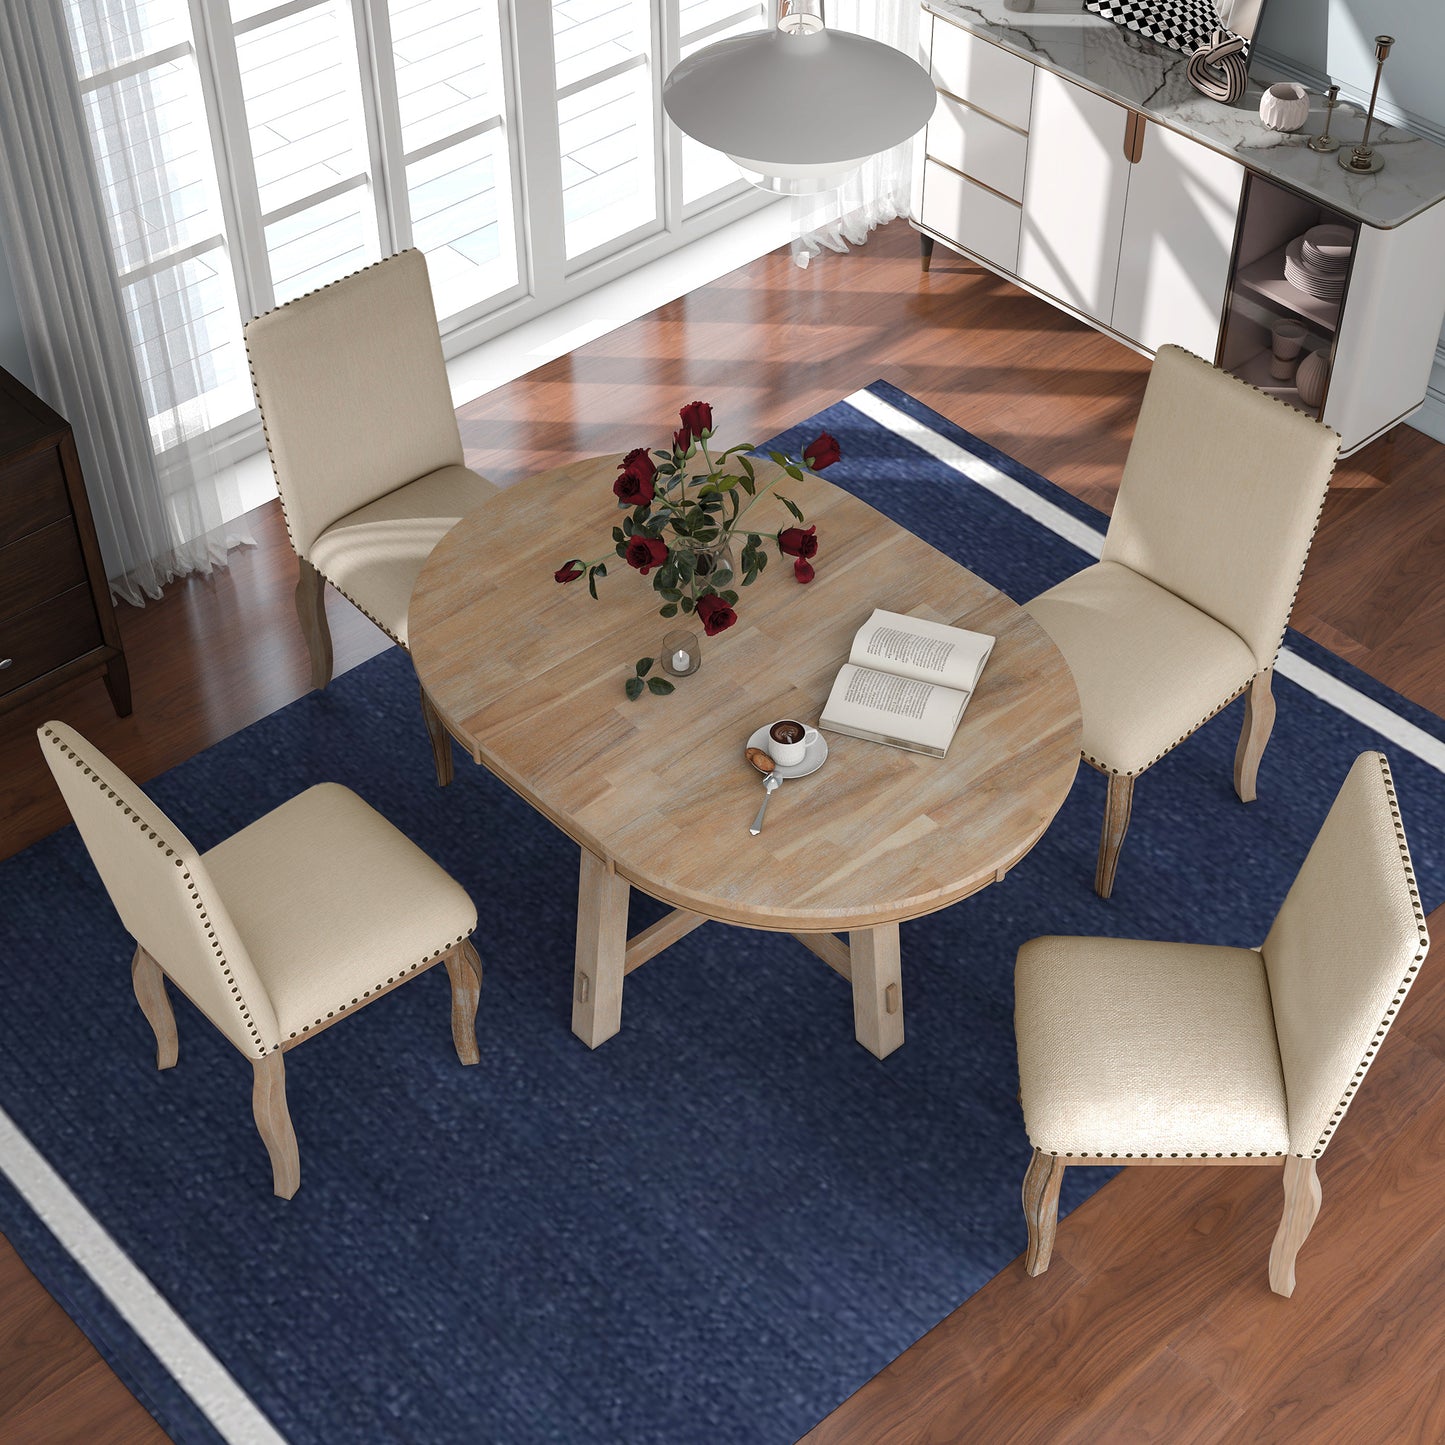 5-teiliger runder ausziehbarer Esstisch aus Holz und 4 gepolsterte Esszimmerstühle